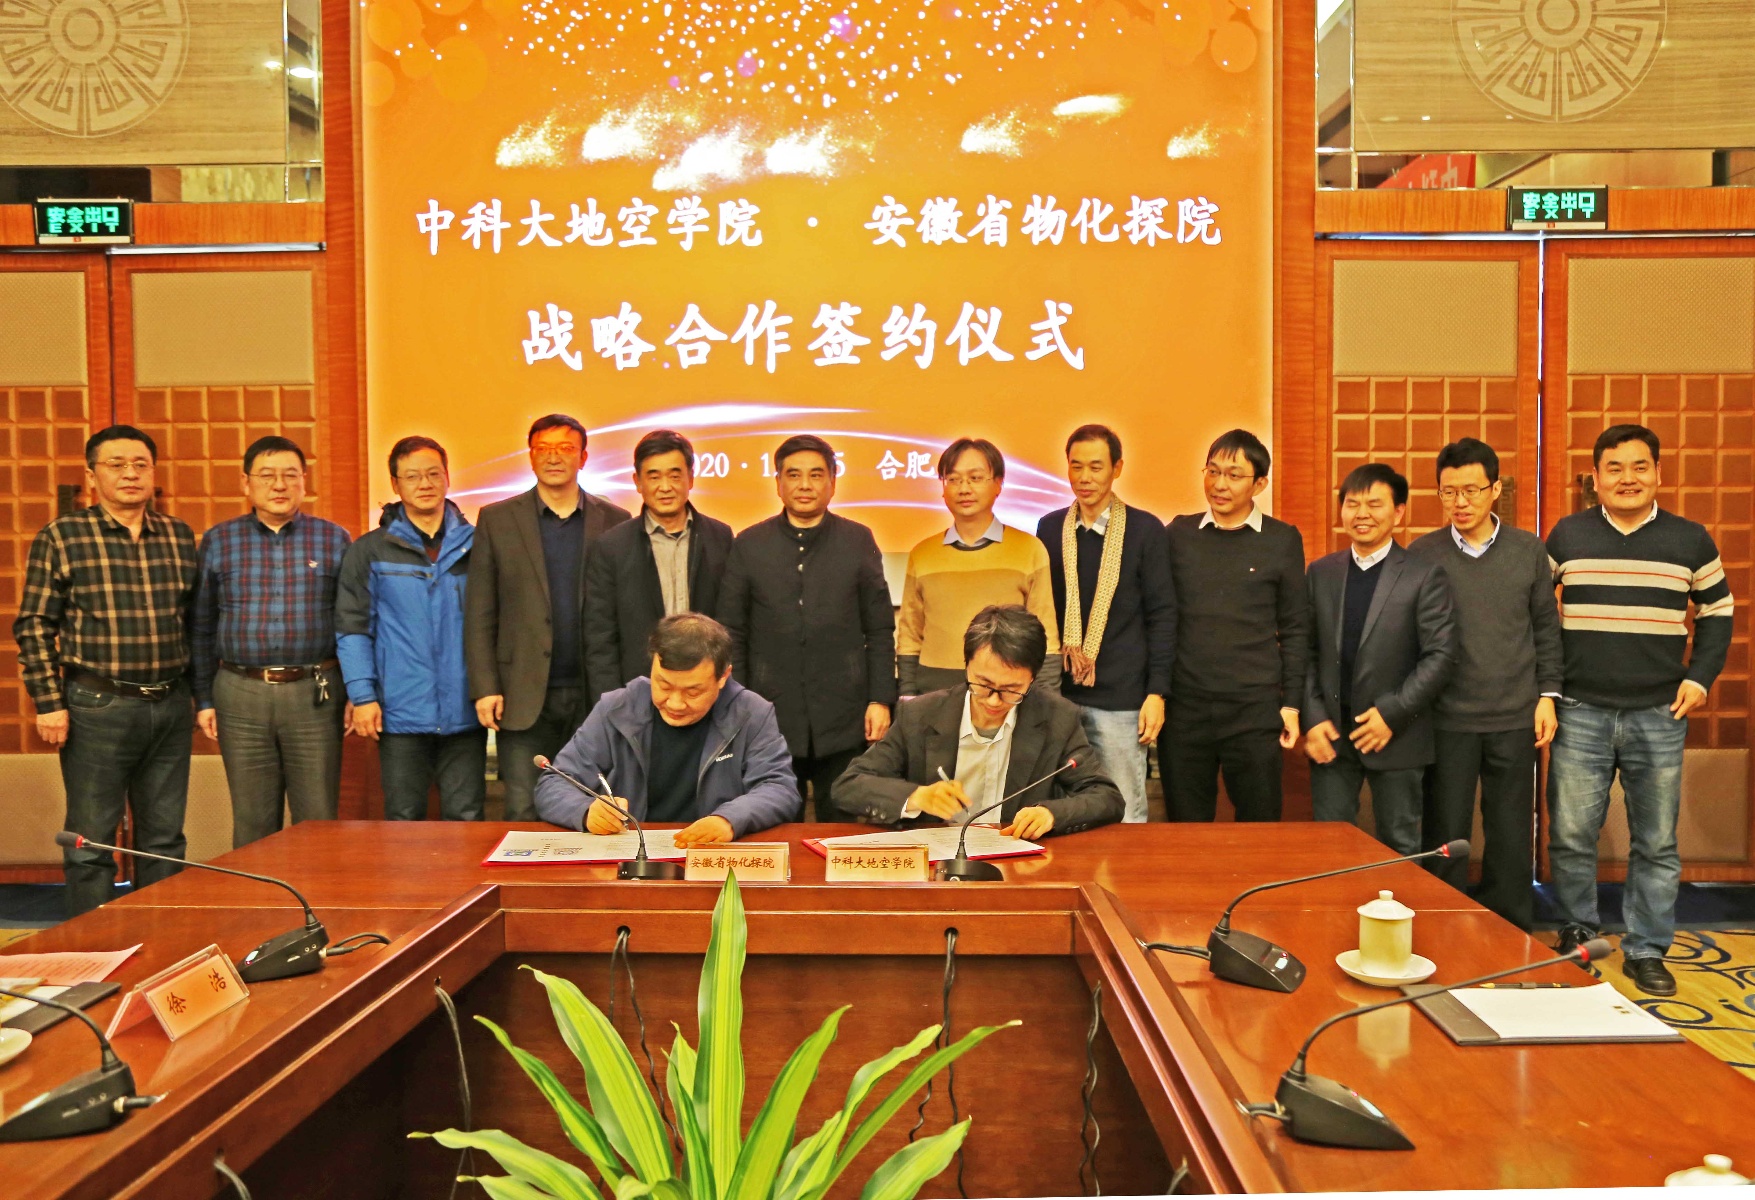 安徽省物化探院与中科大地空学院签署战略合作协议